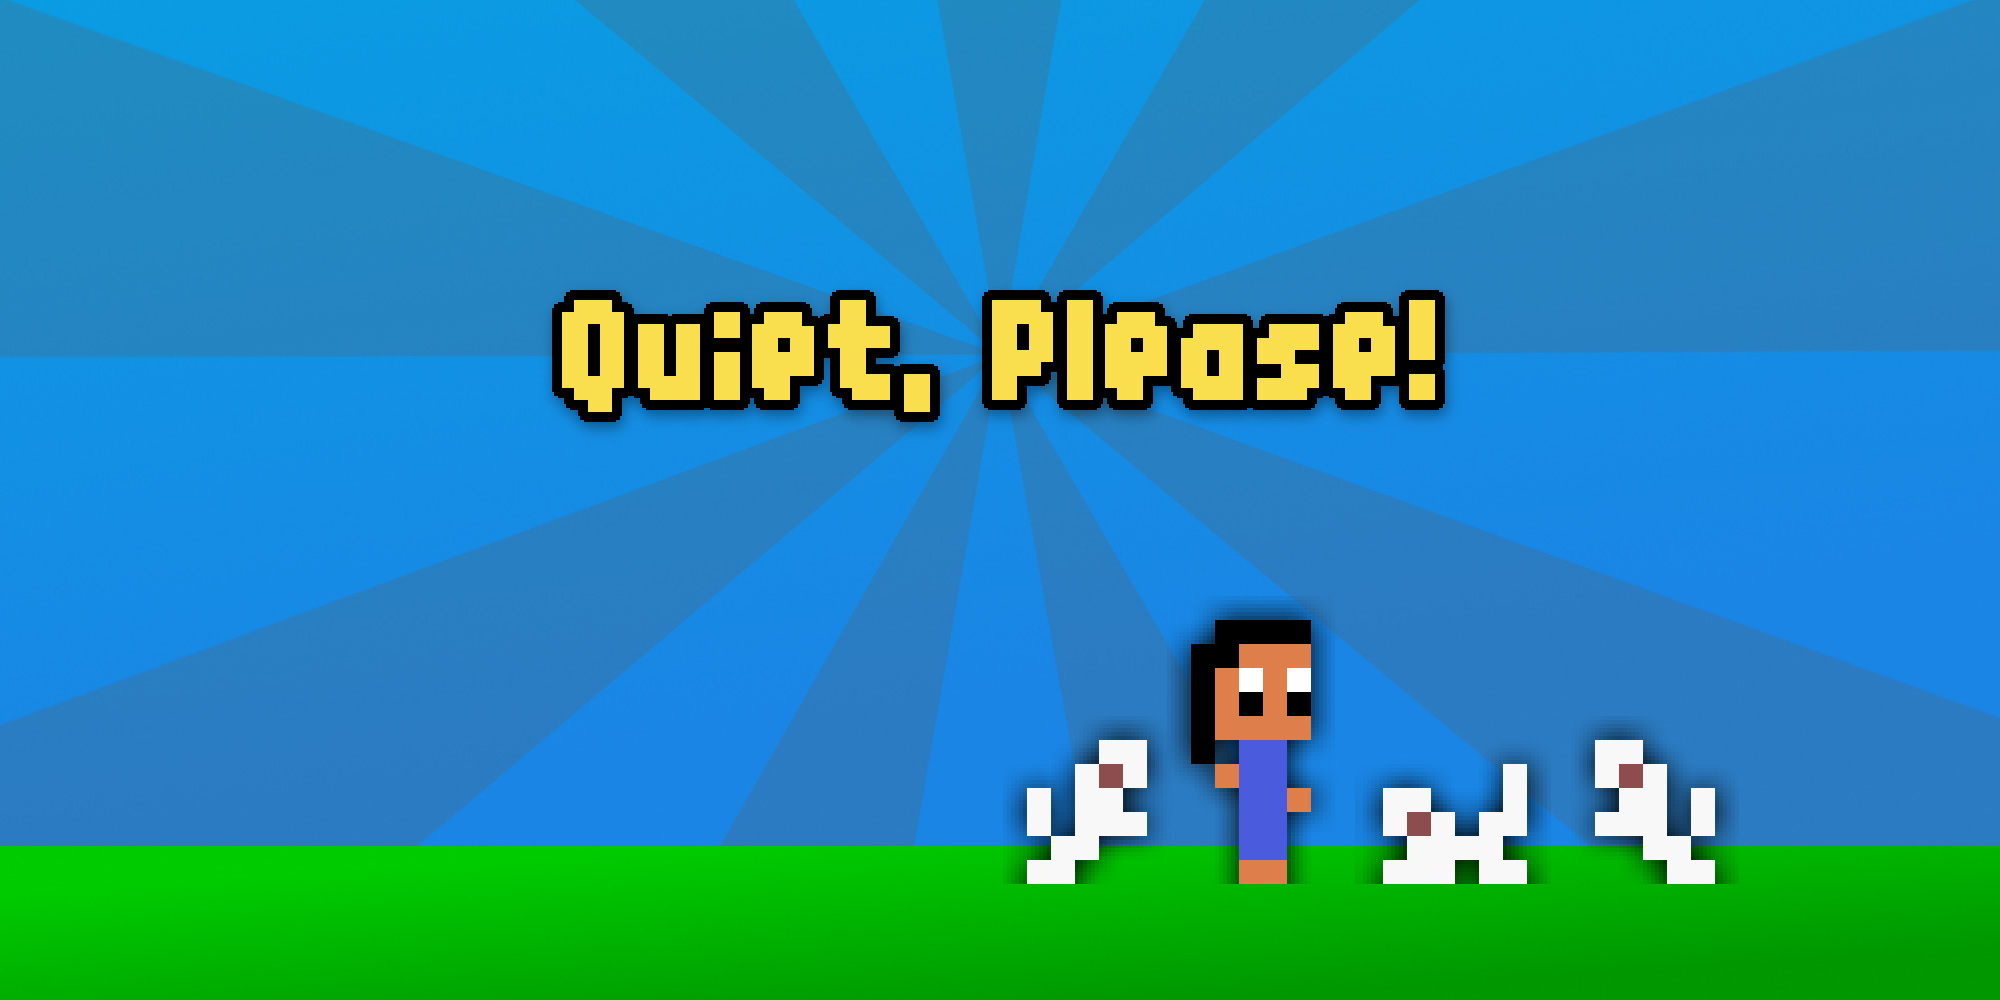 Quiet, Please! | Nintendo 3DS download software | Games | Nintendo2000 x 1000